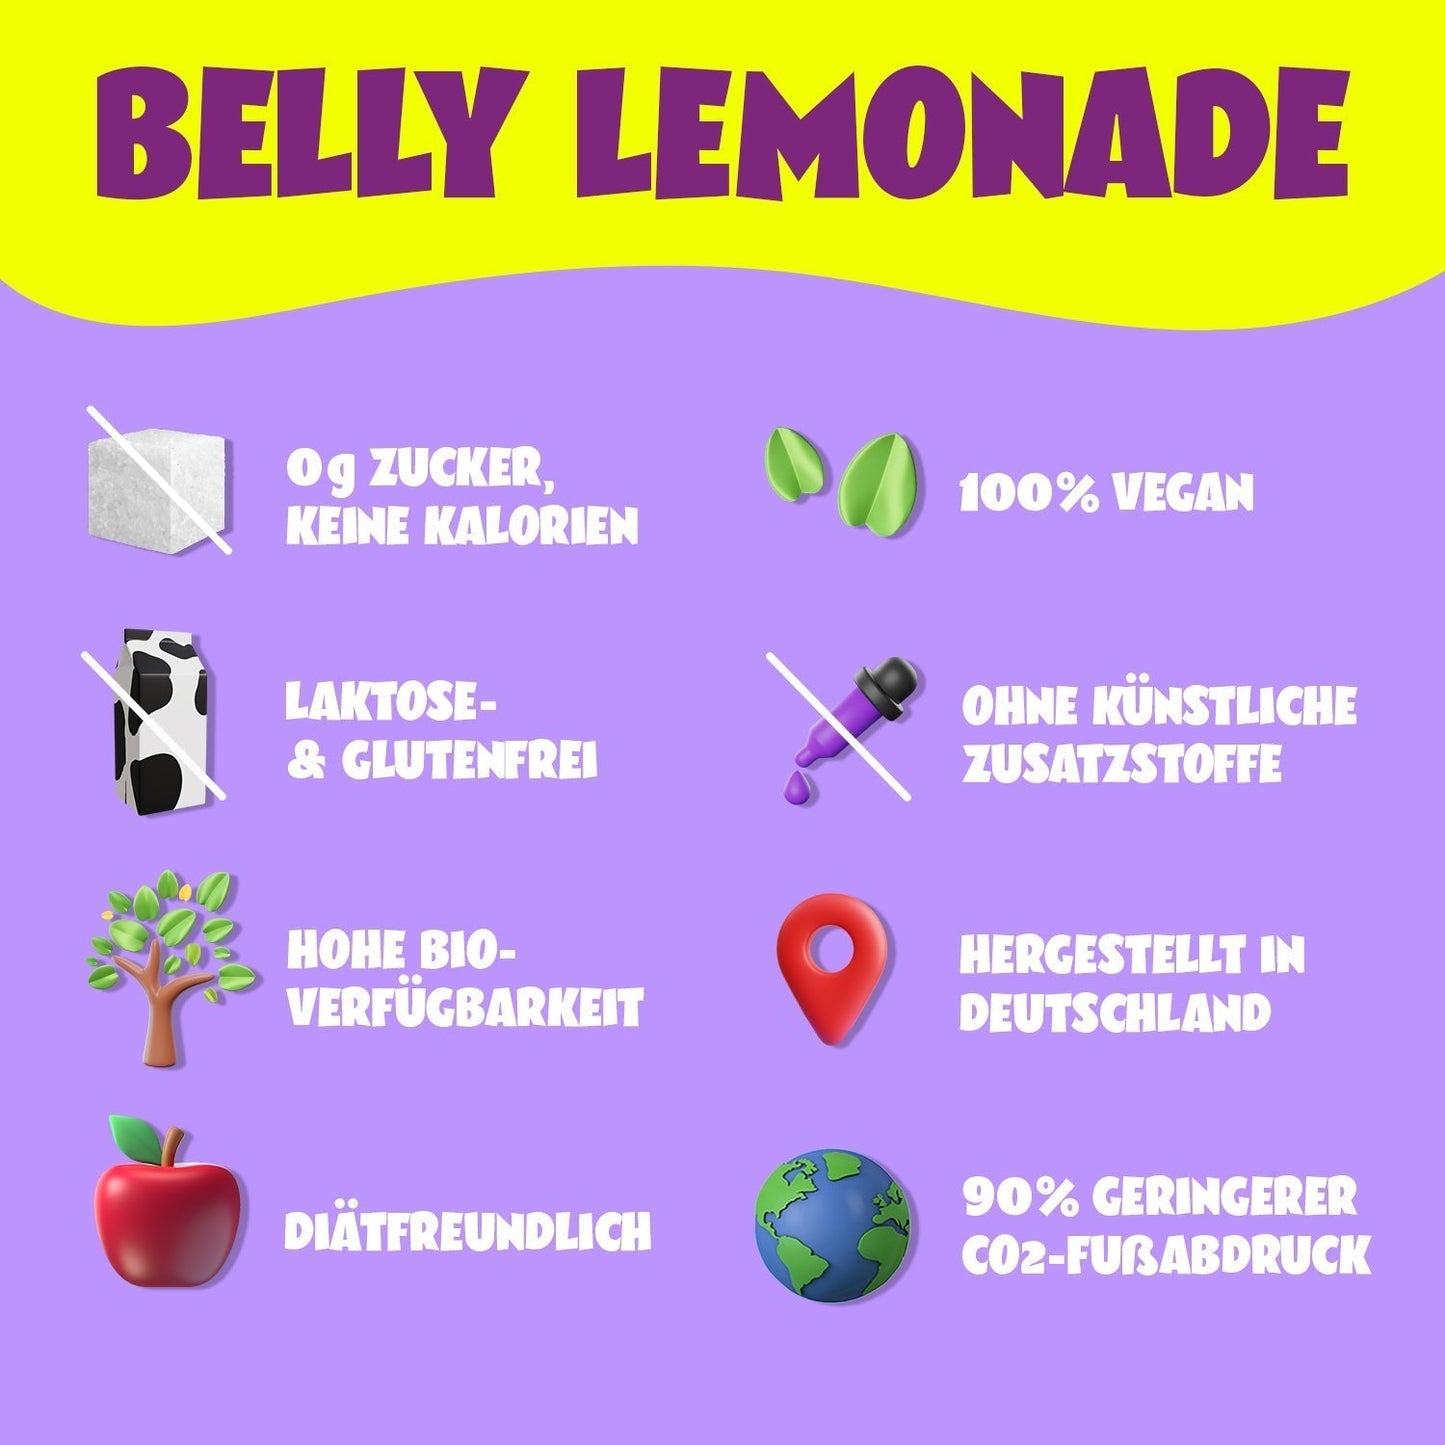 Belly Lemonade Probierpaket